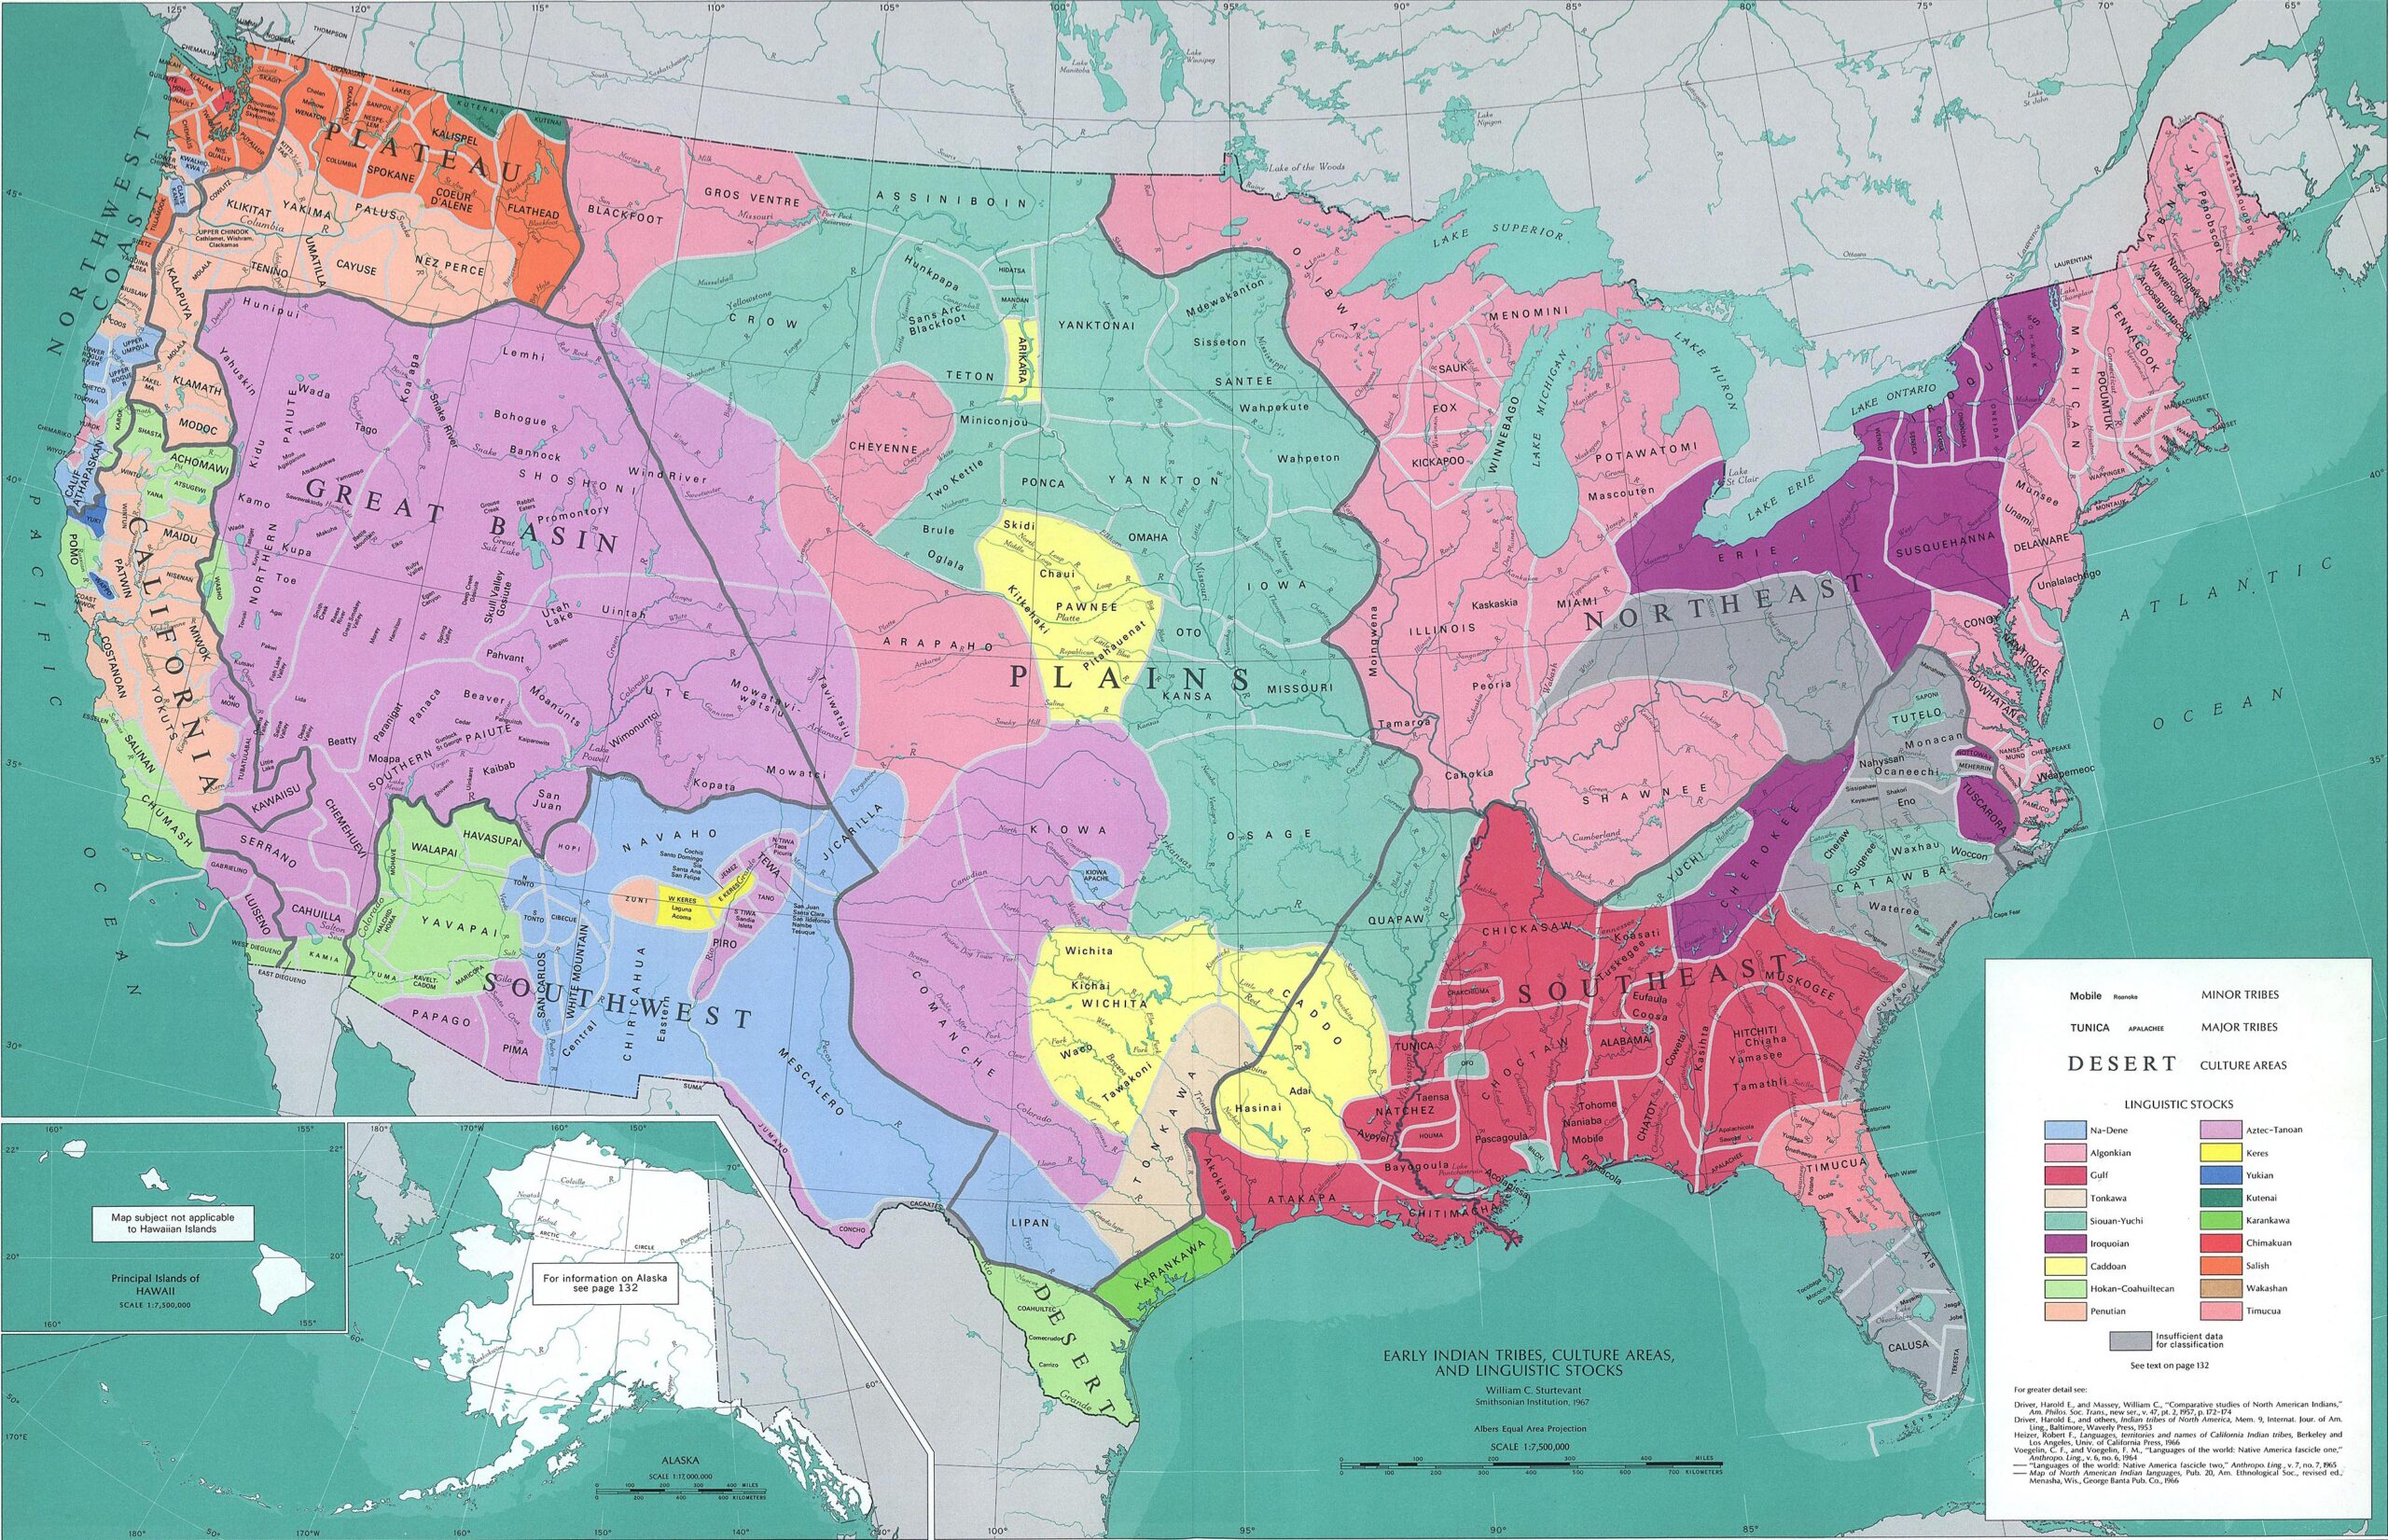 Lenguas y culturas nativas de Estados Unidos (1967)